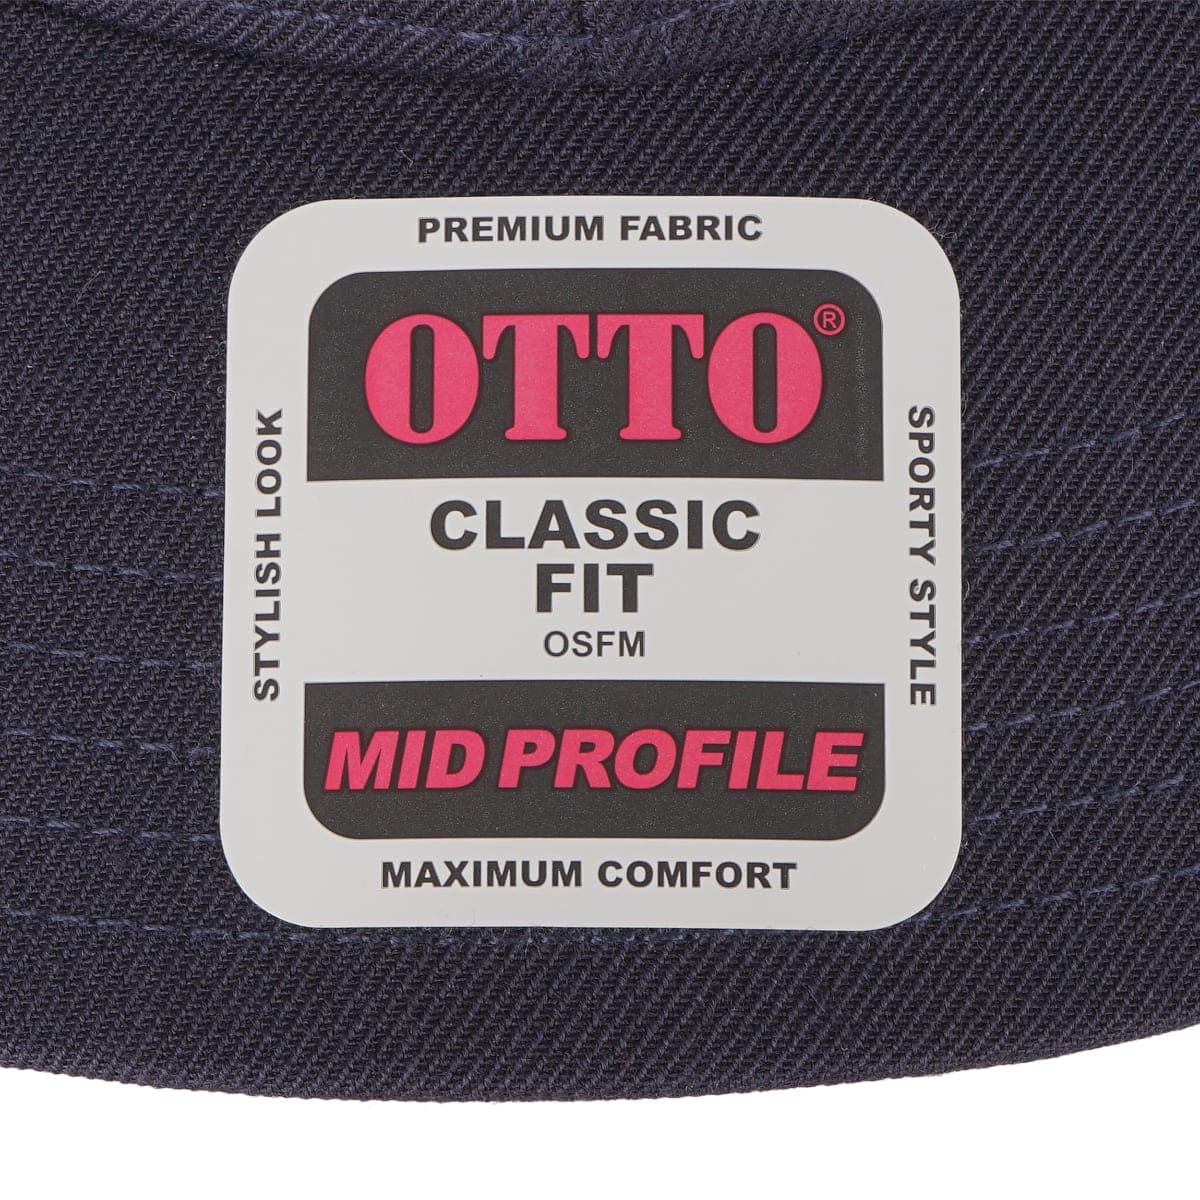 OTTO 6パネルミッドプロファイルベースボールキャップ | ノベルティ(小物) | 1枚 | OTC-365 | チャコール